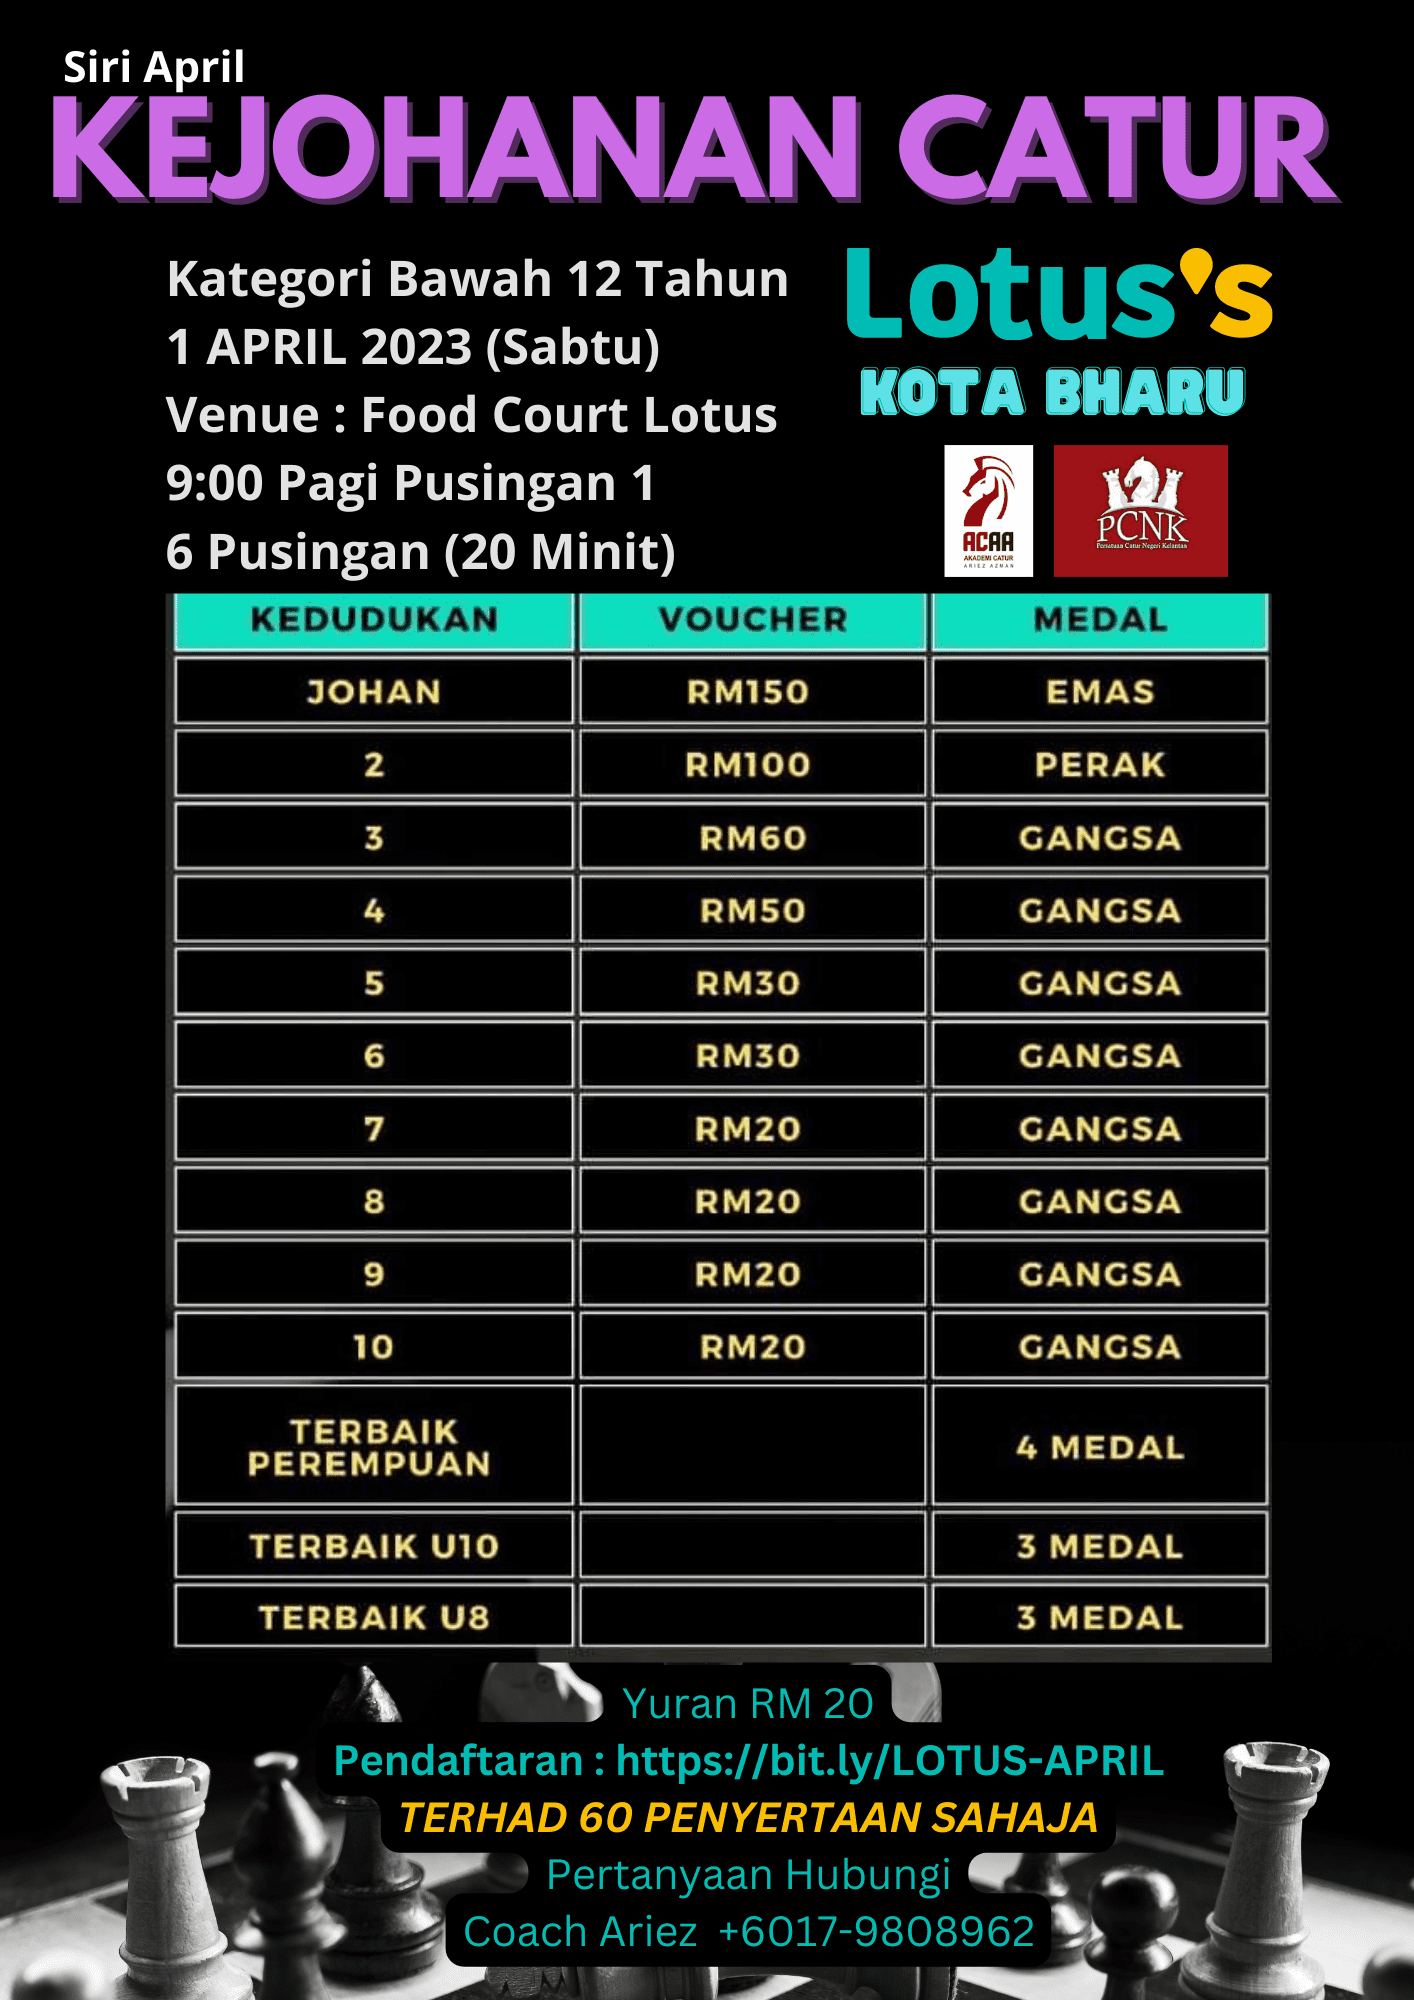 Kejohanan Catur Siri April 2023 Bawah 12 Tahun Lotus&#8217;s Kota Bharu